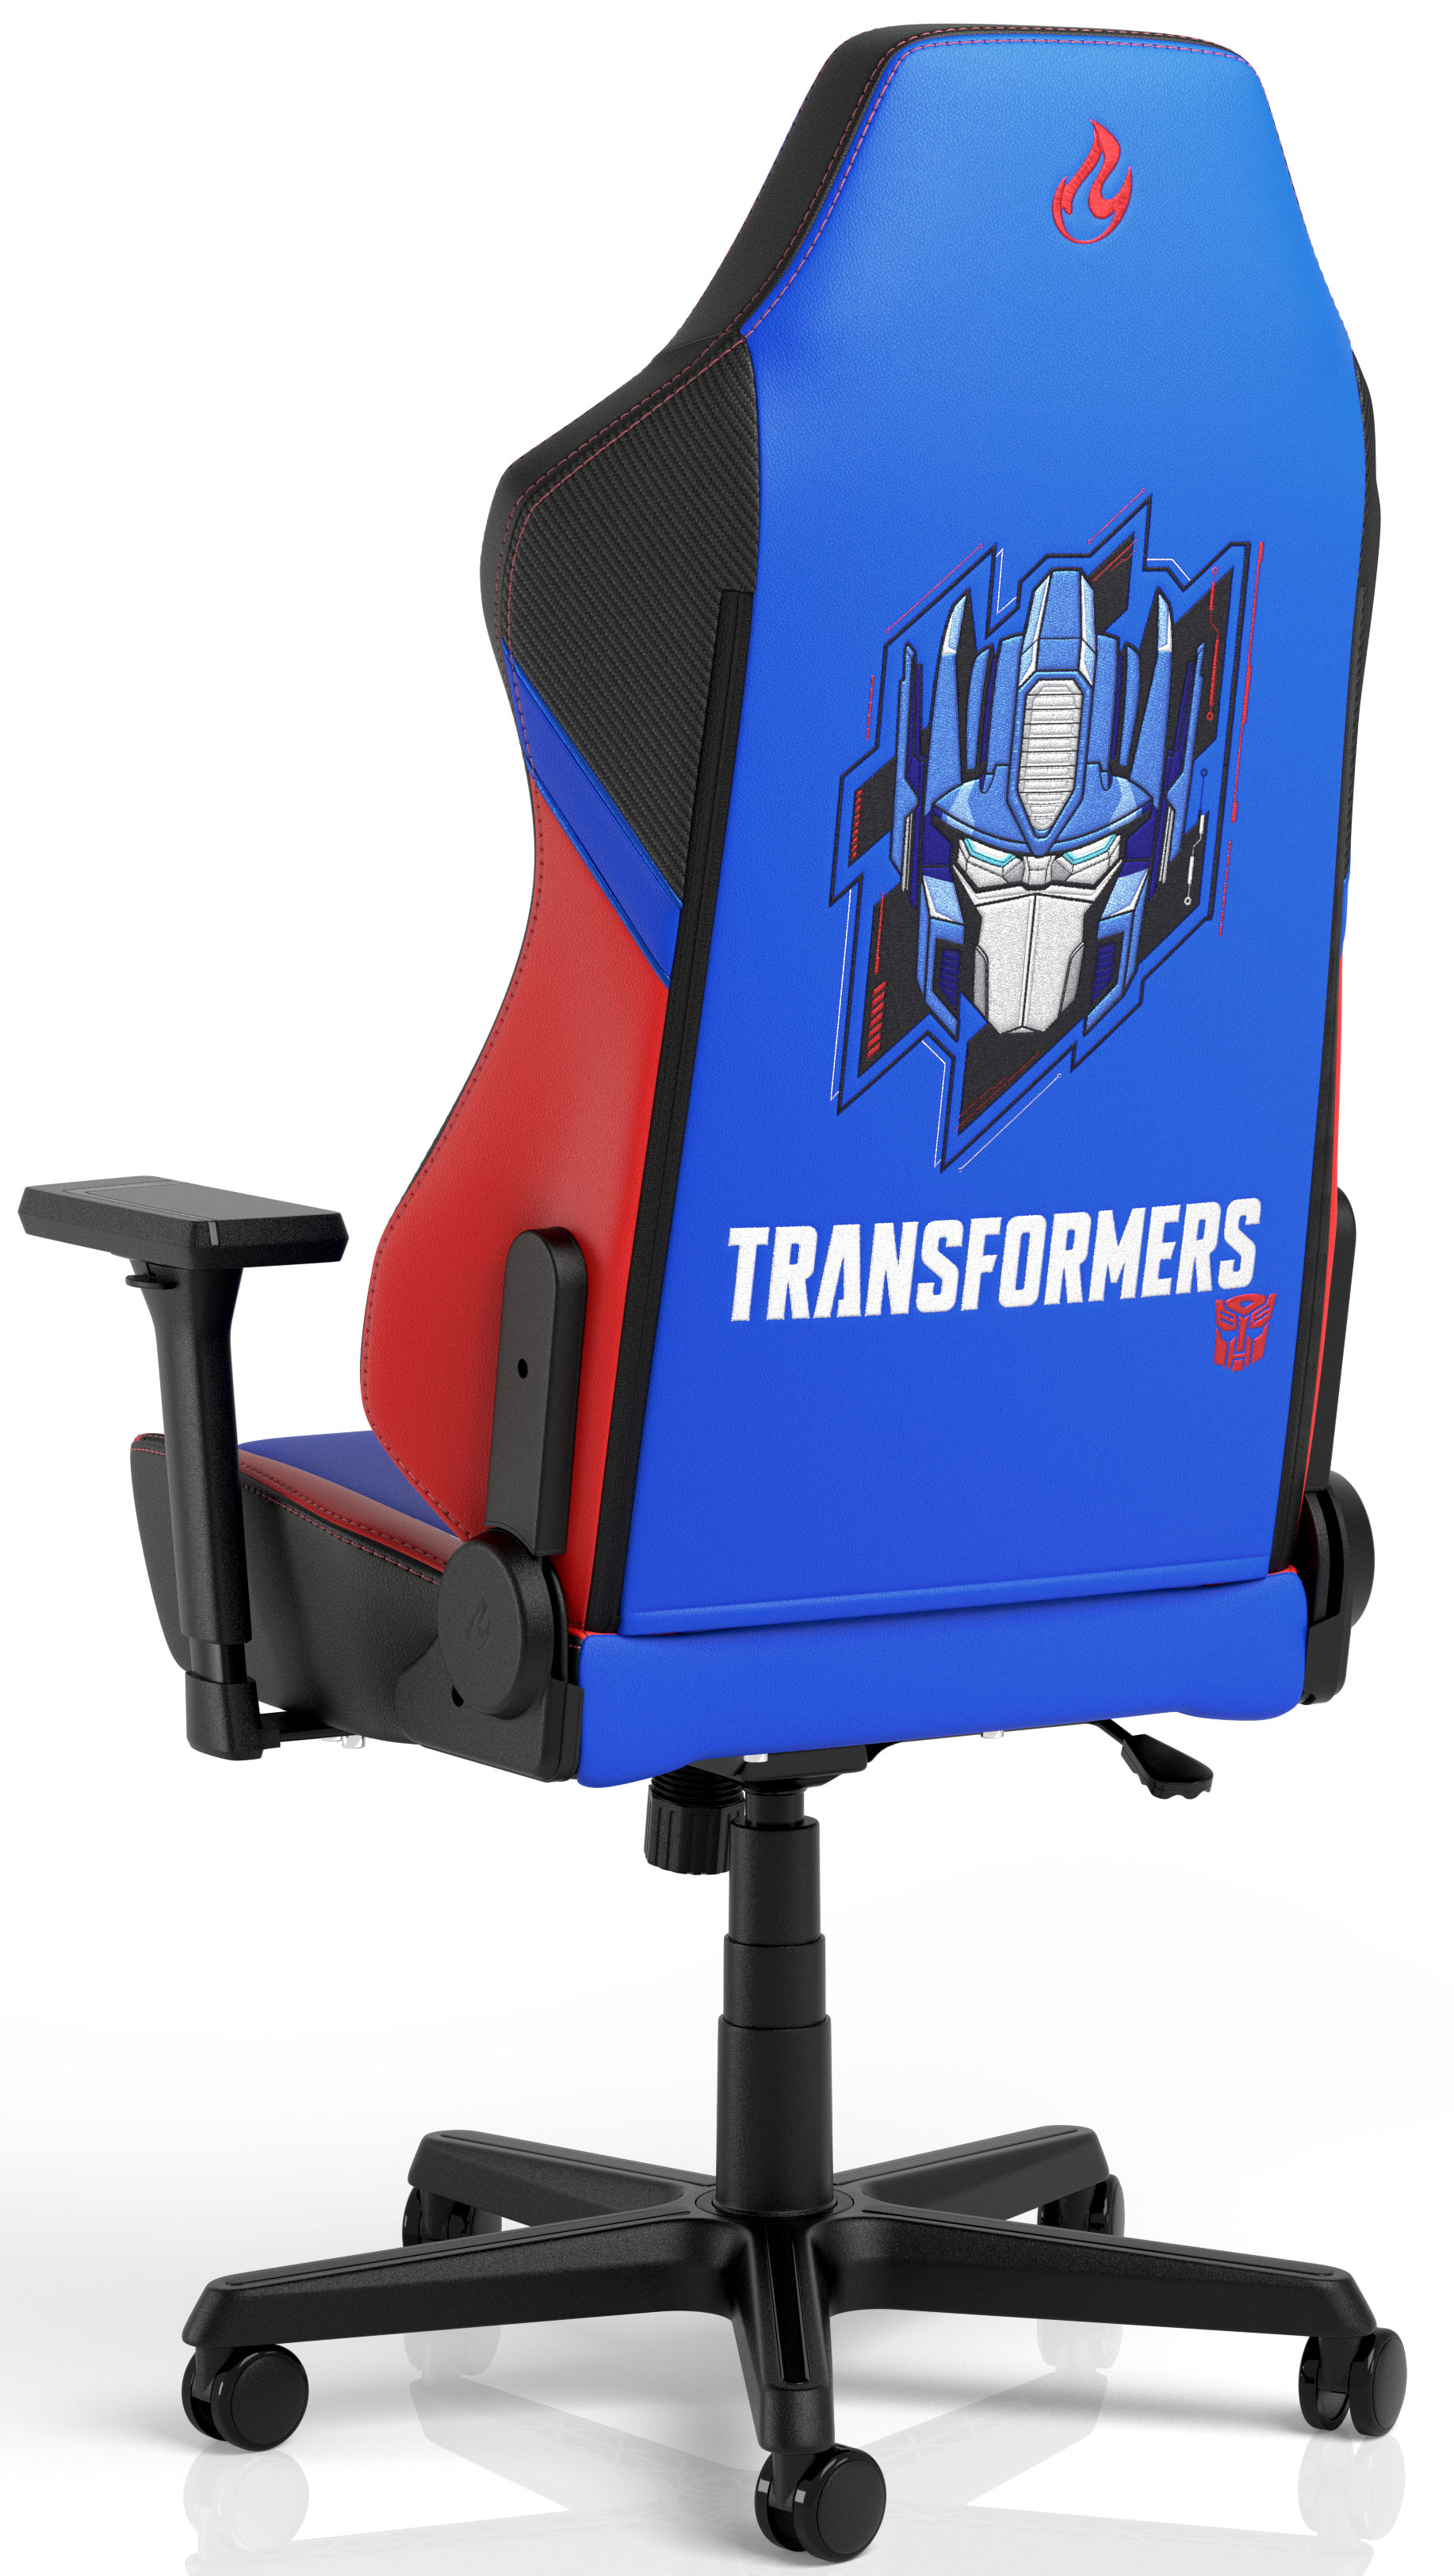 Nitro Concepts - Silla Nitro Concepts X1000 Gaming - Transformers Optimus Prime Edition